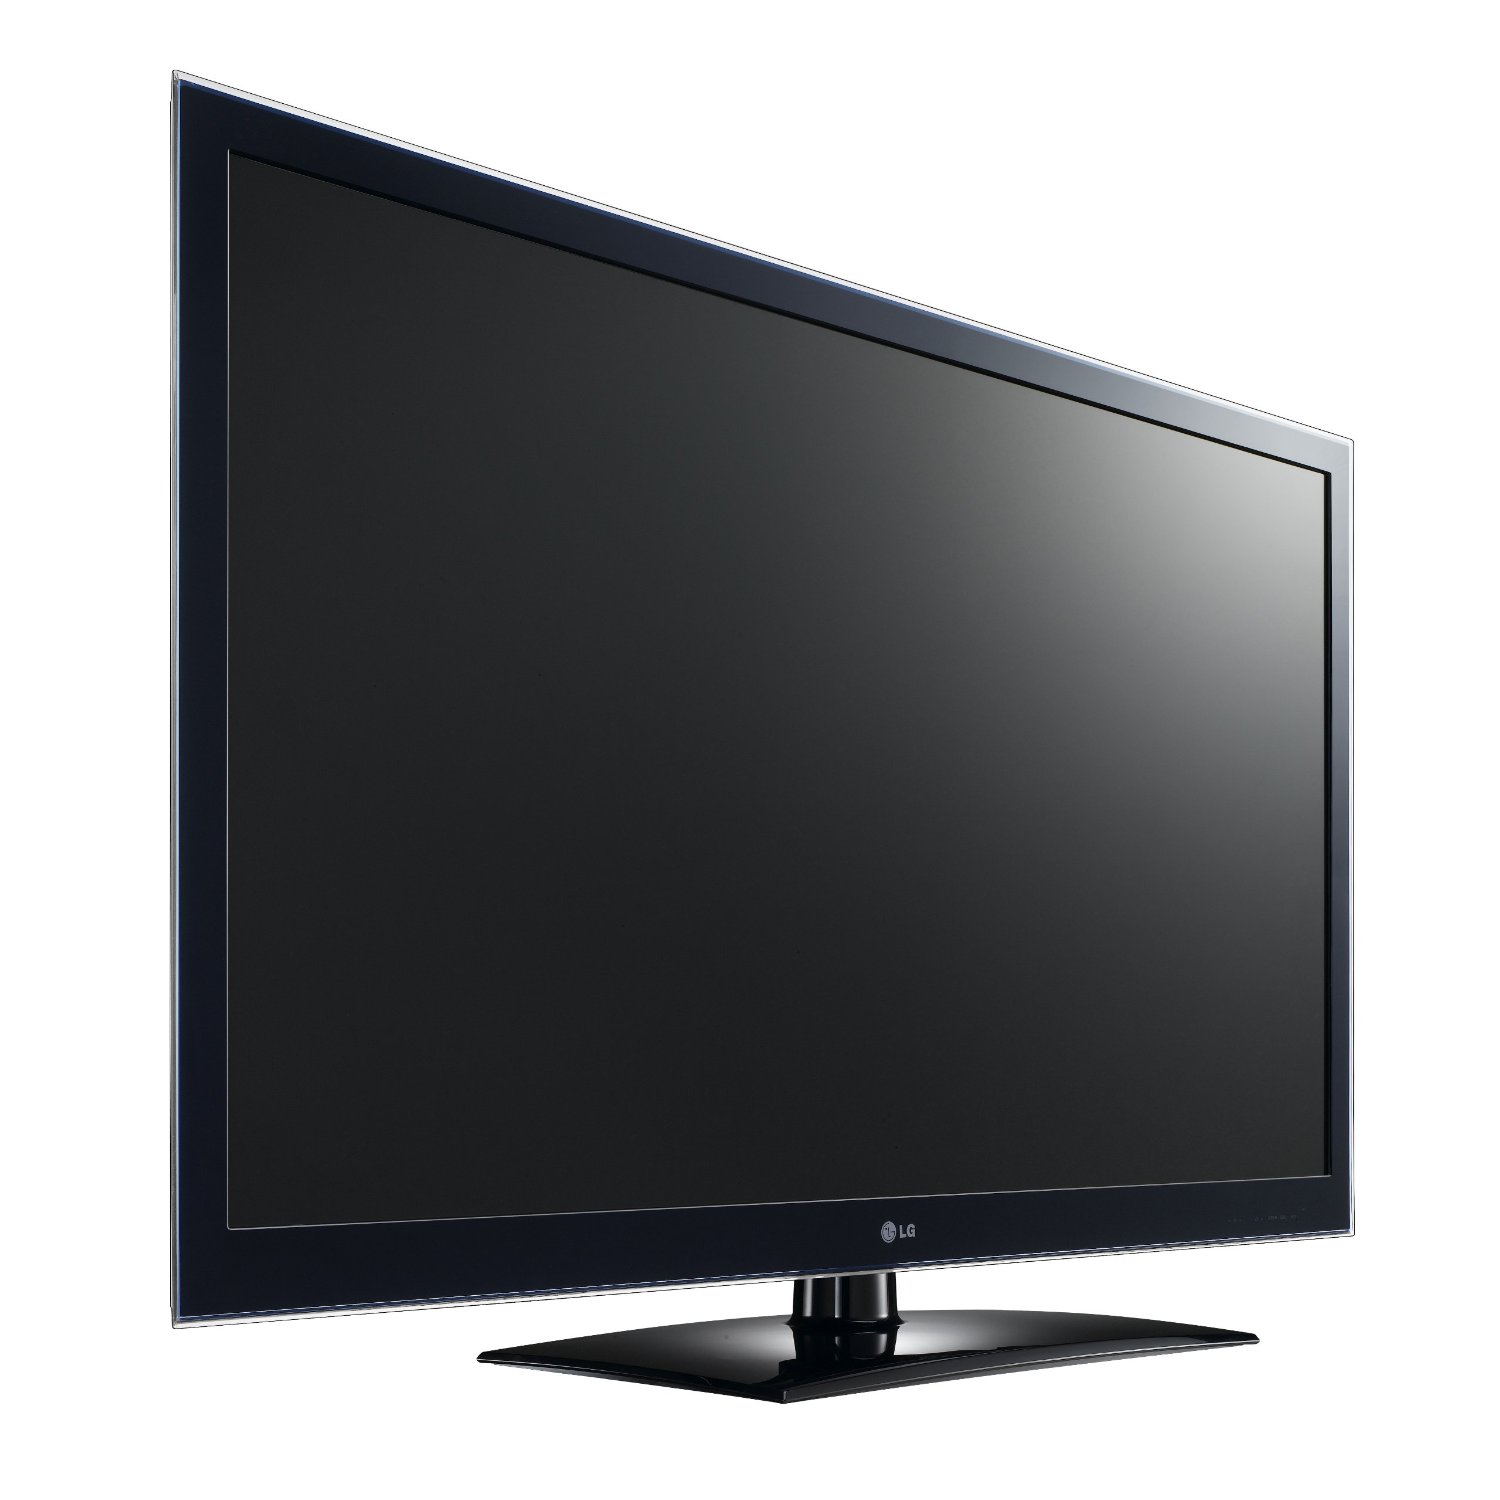 Какие есть телевизоры lg. Телевизор LG 42lv4500 42". LG Smart TV 2011. Телевизор LG 42lv571s 42". Телевизор LG LCD led 3d.